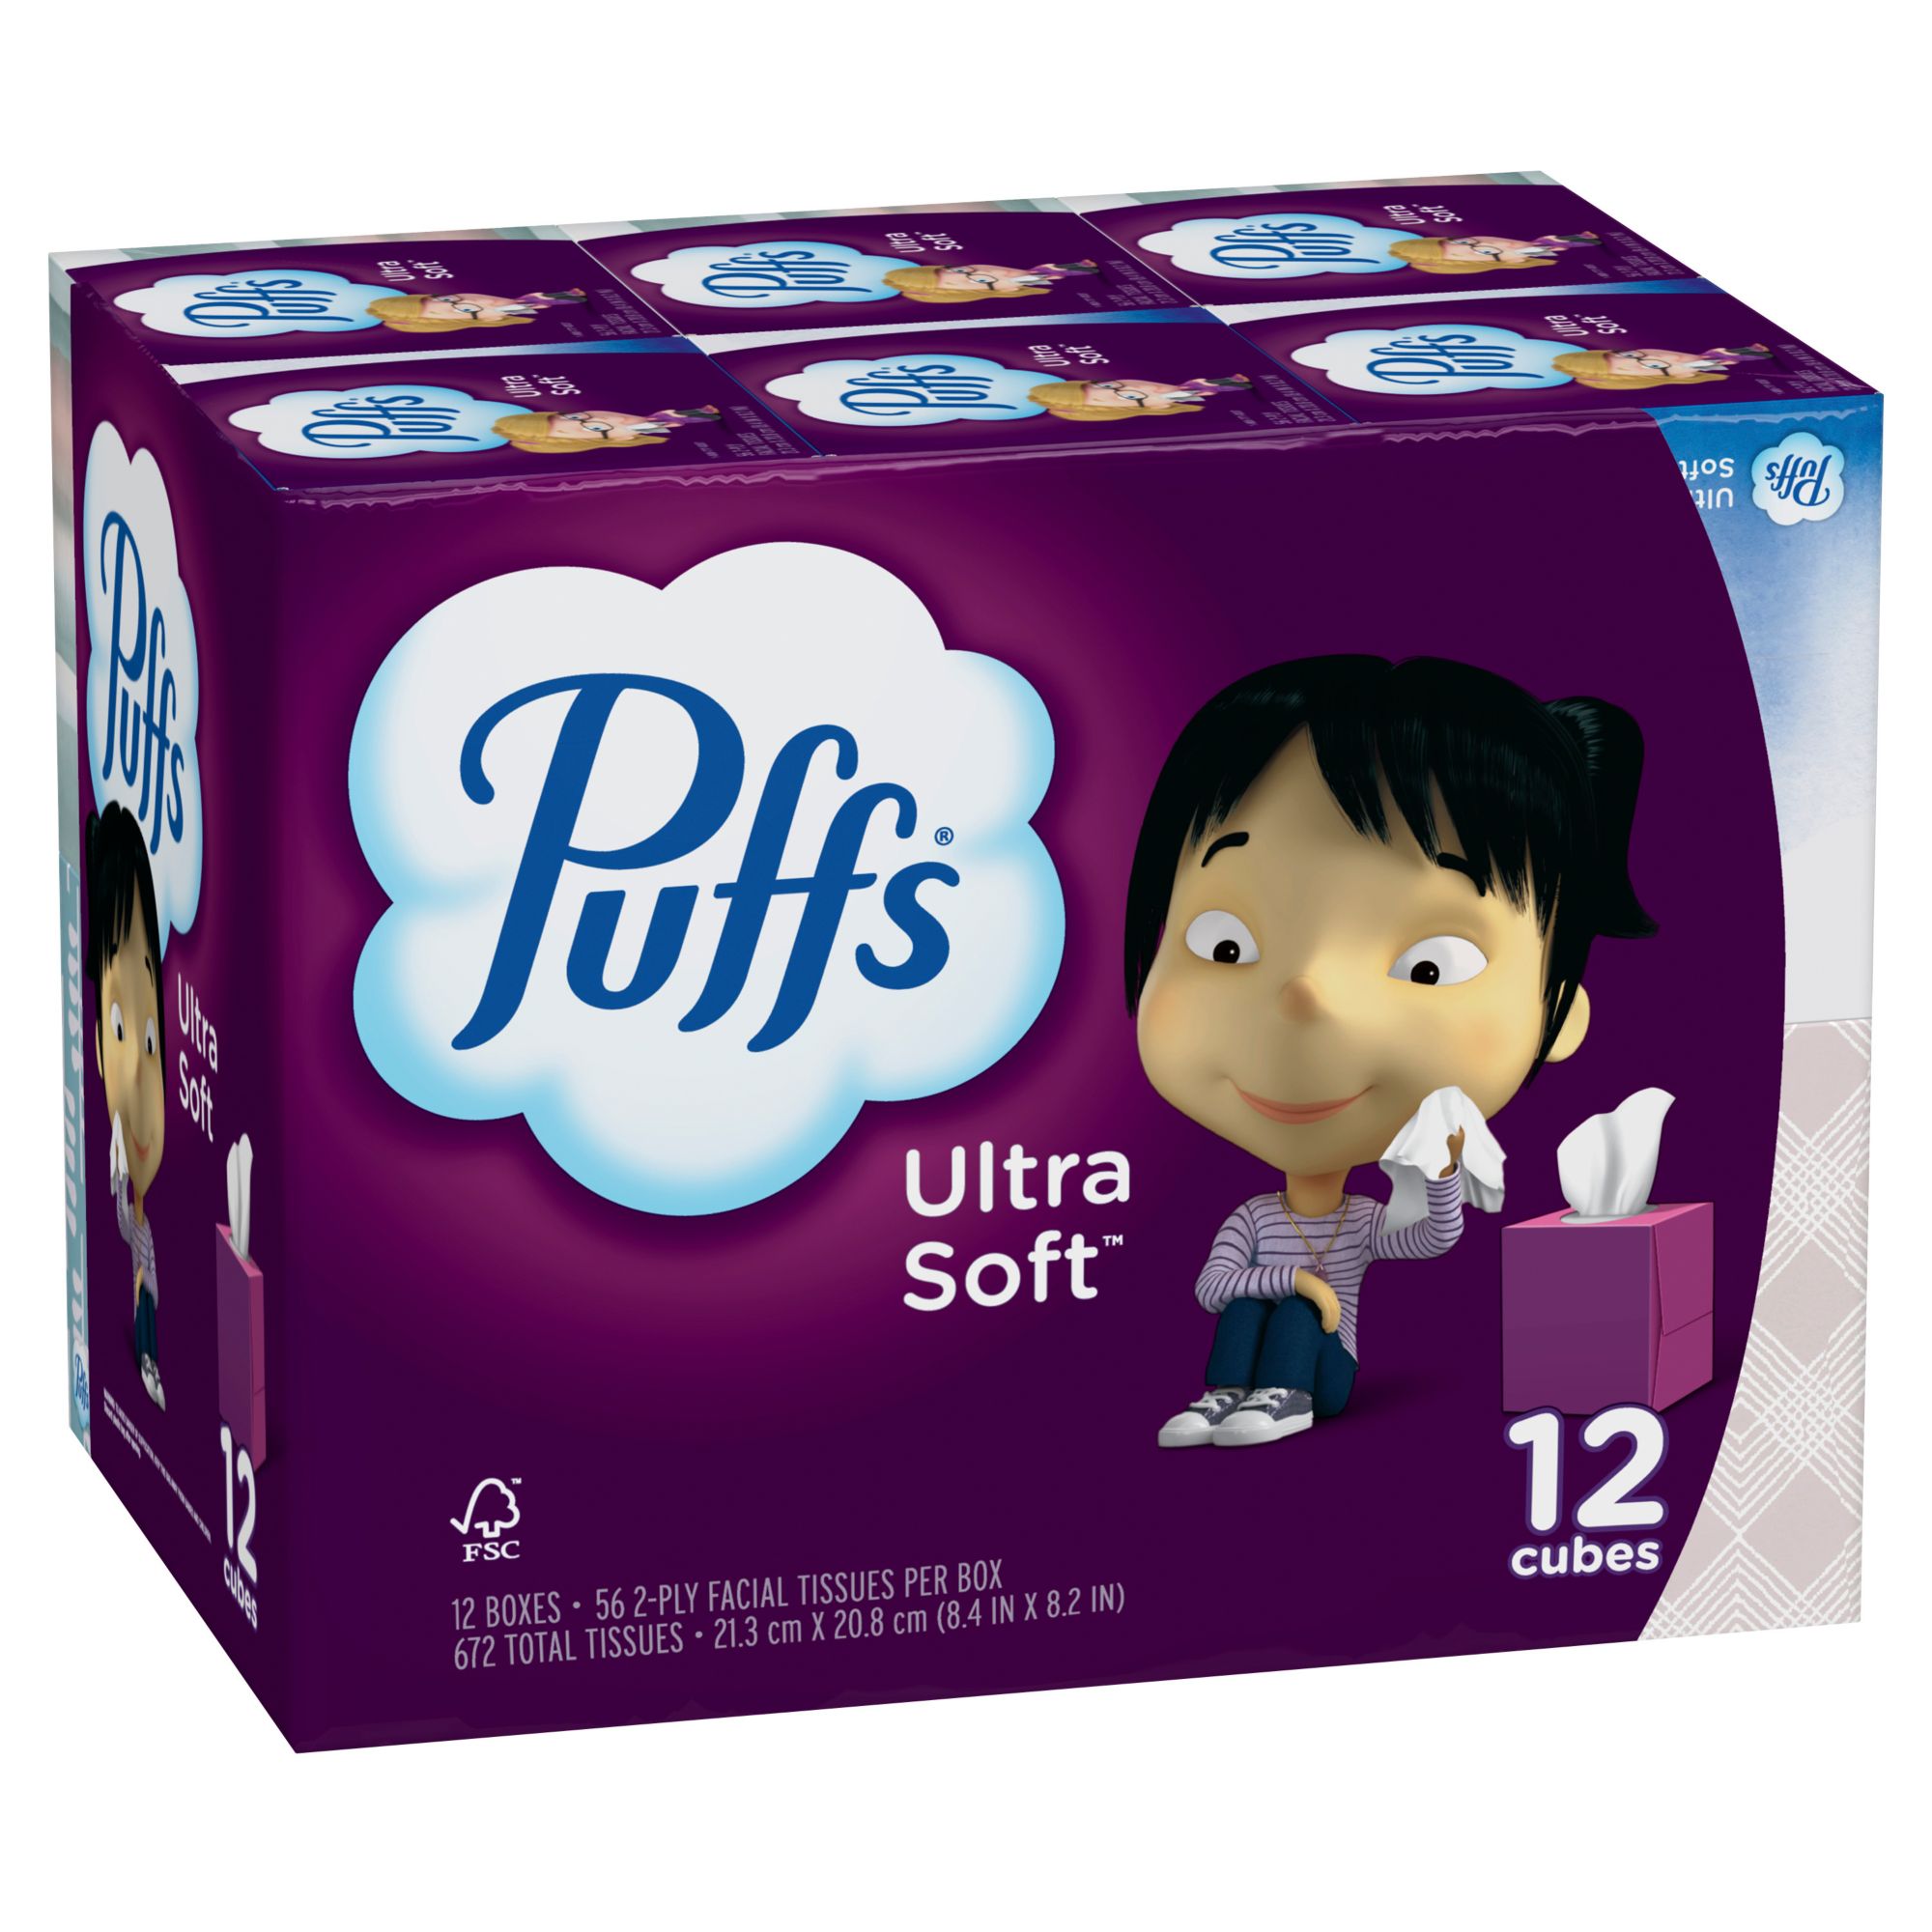 Puffs Ultra Soft